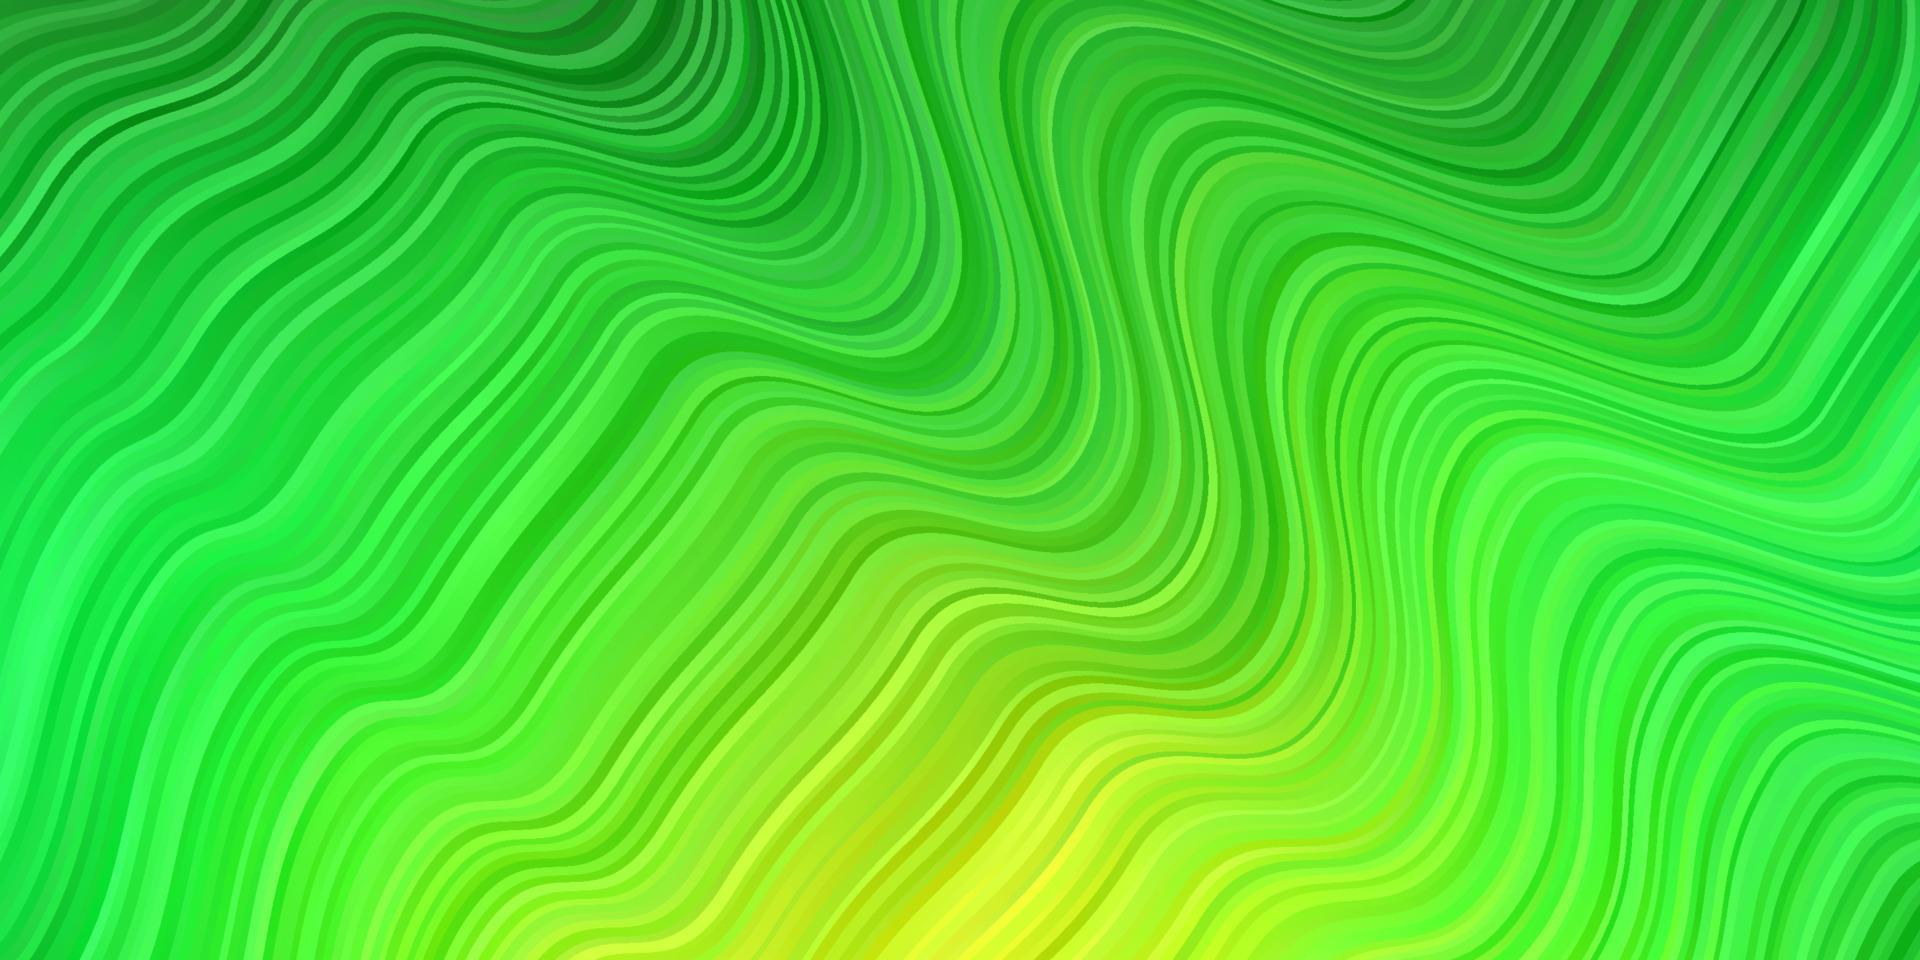 hellgrüner, gelber Vektorhintergrund mit gebogenen Linien. vektor